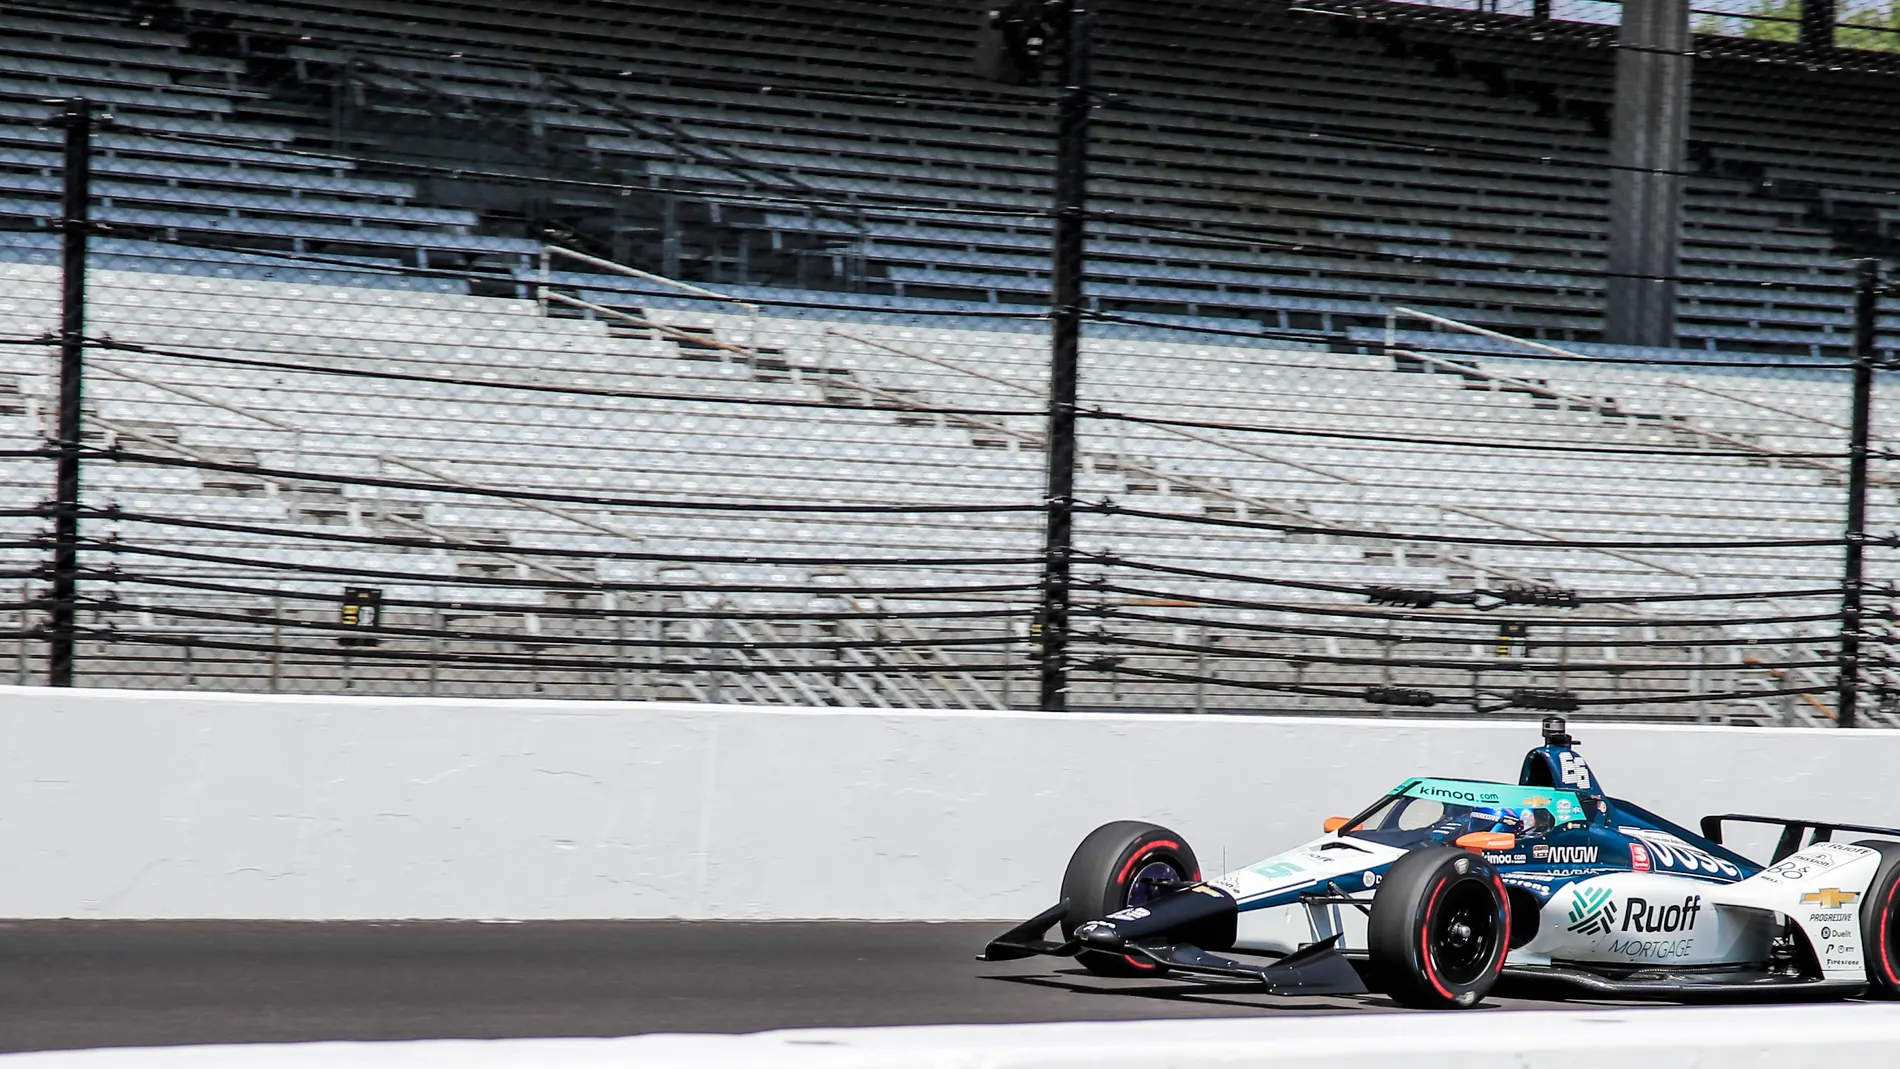 Indianapolis 500 qualifying